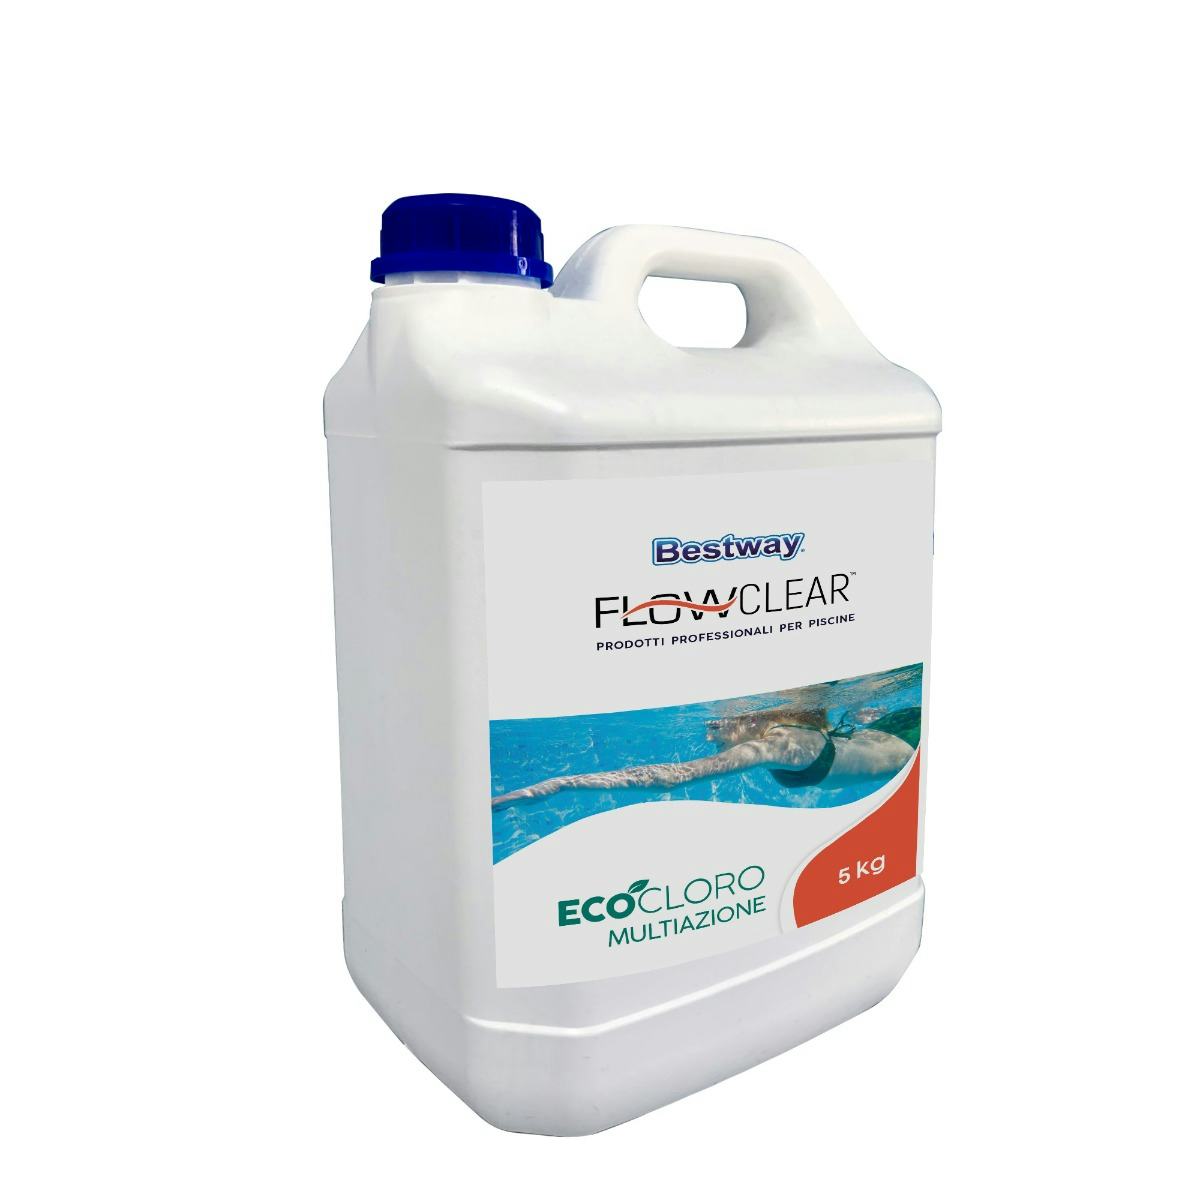 Trattamento chimico dell'acqua Eco-cloro multiazione da 5 kg  Bestway 1